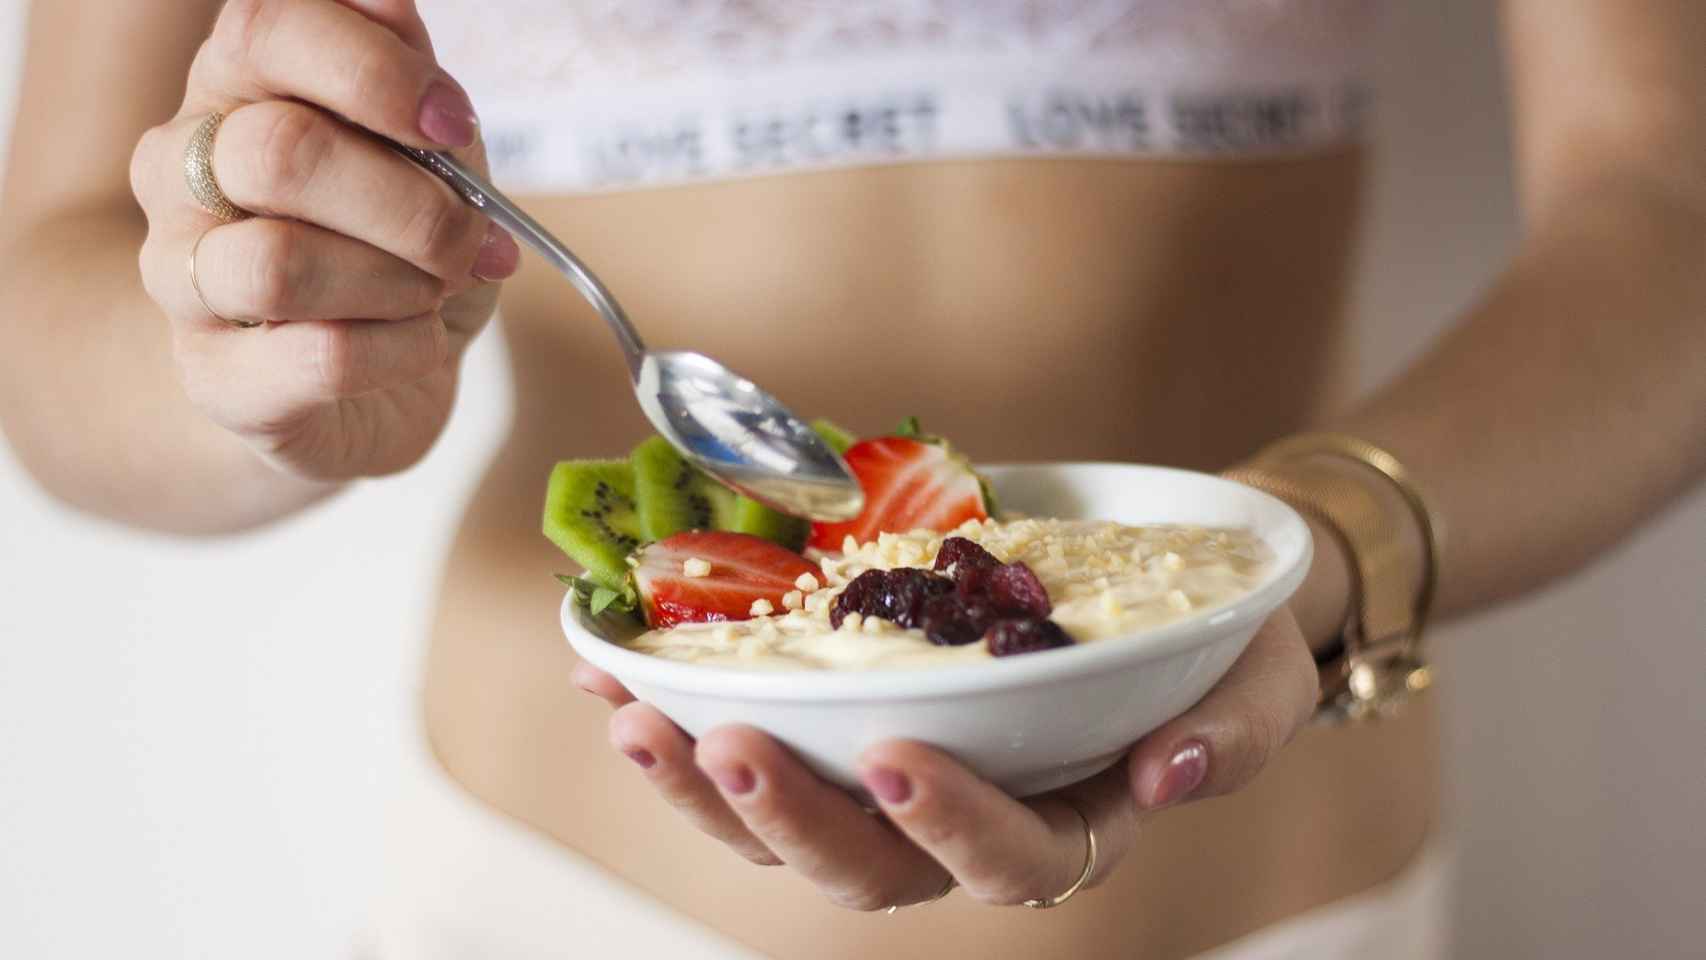 El peligro para tu organismo de perder peso muy rápido haciendo dieta